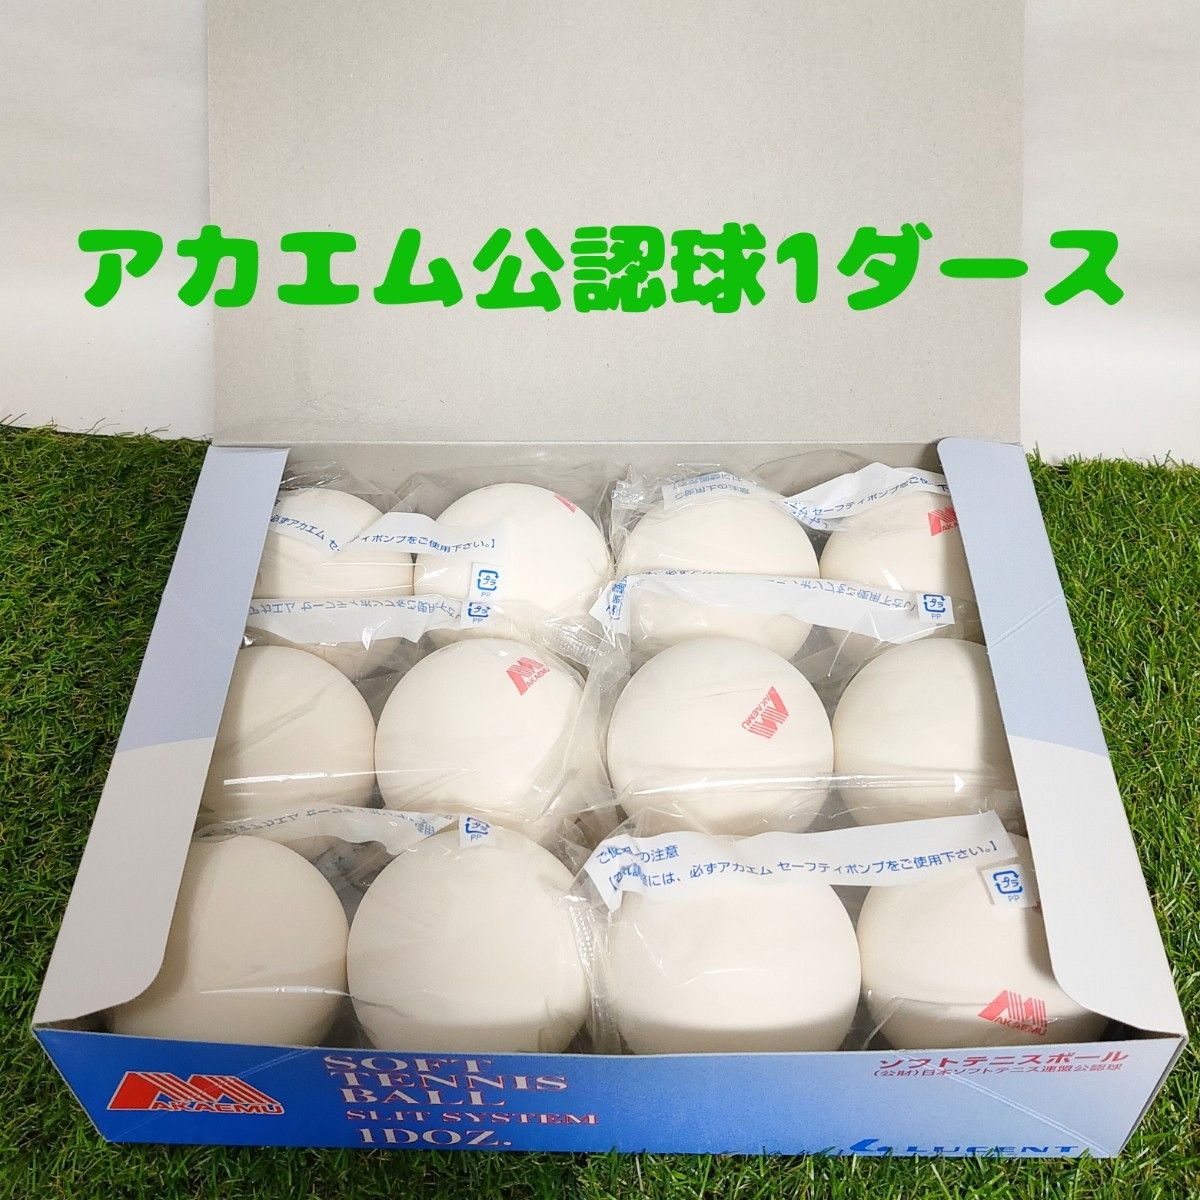 ソフトテニスボール 練習球 120球 ホワイト 日本製 レビュー高評価の商品 スポーツ